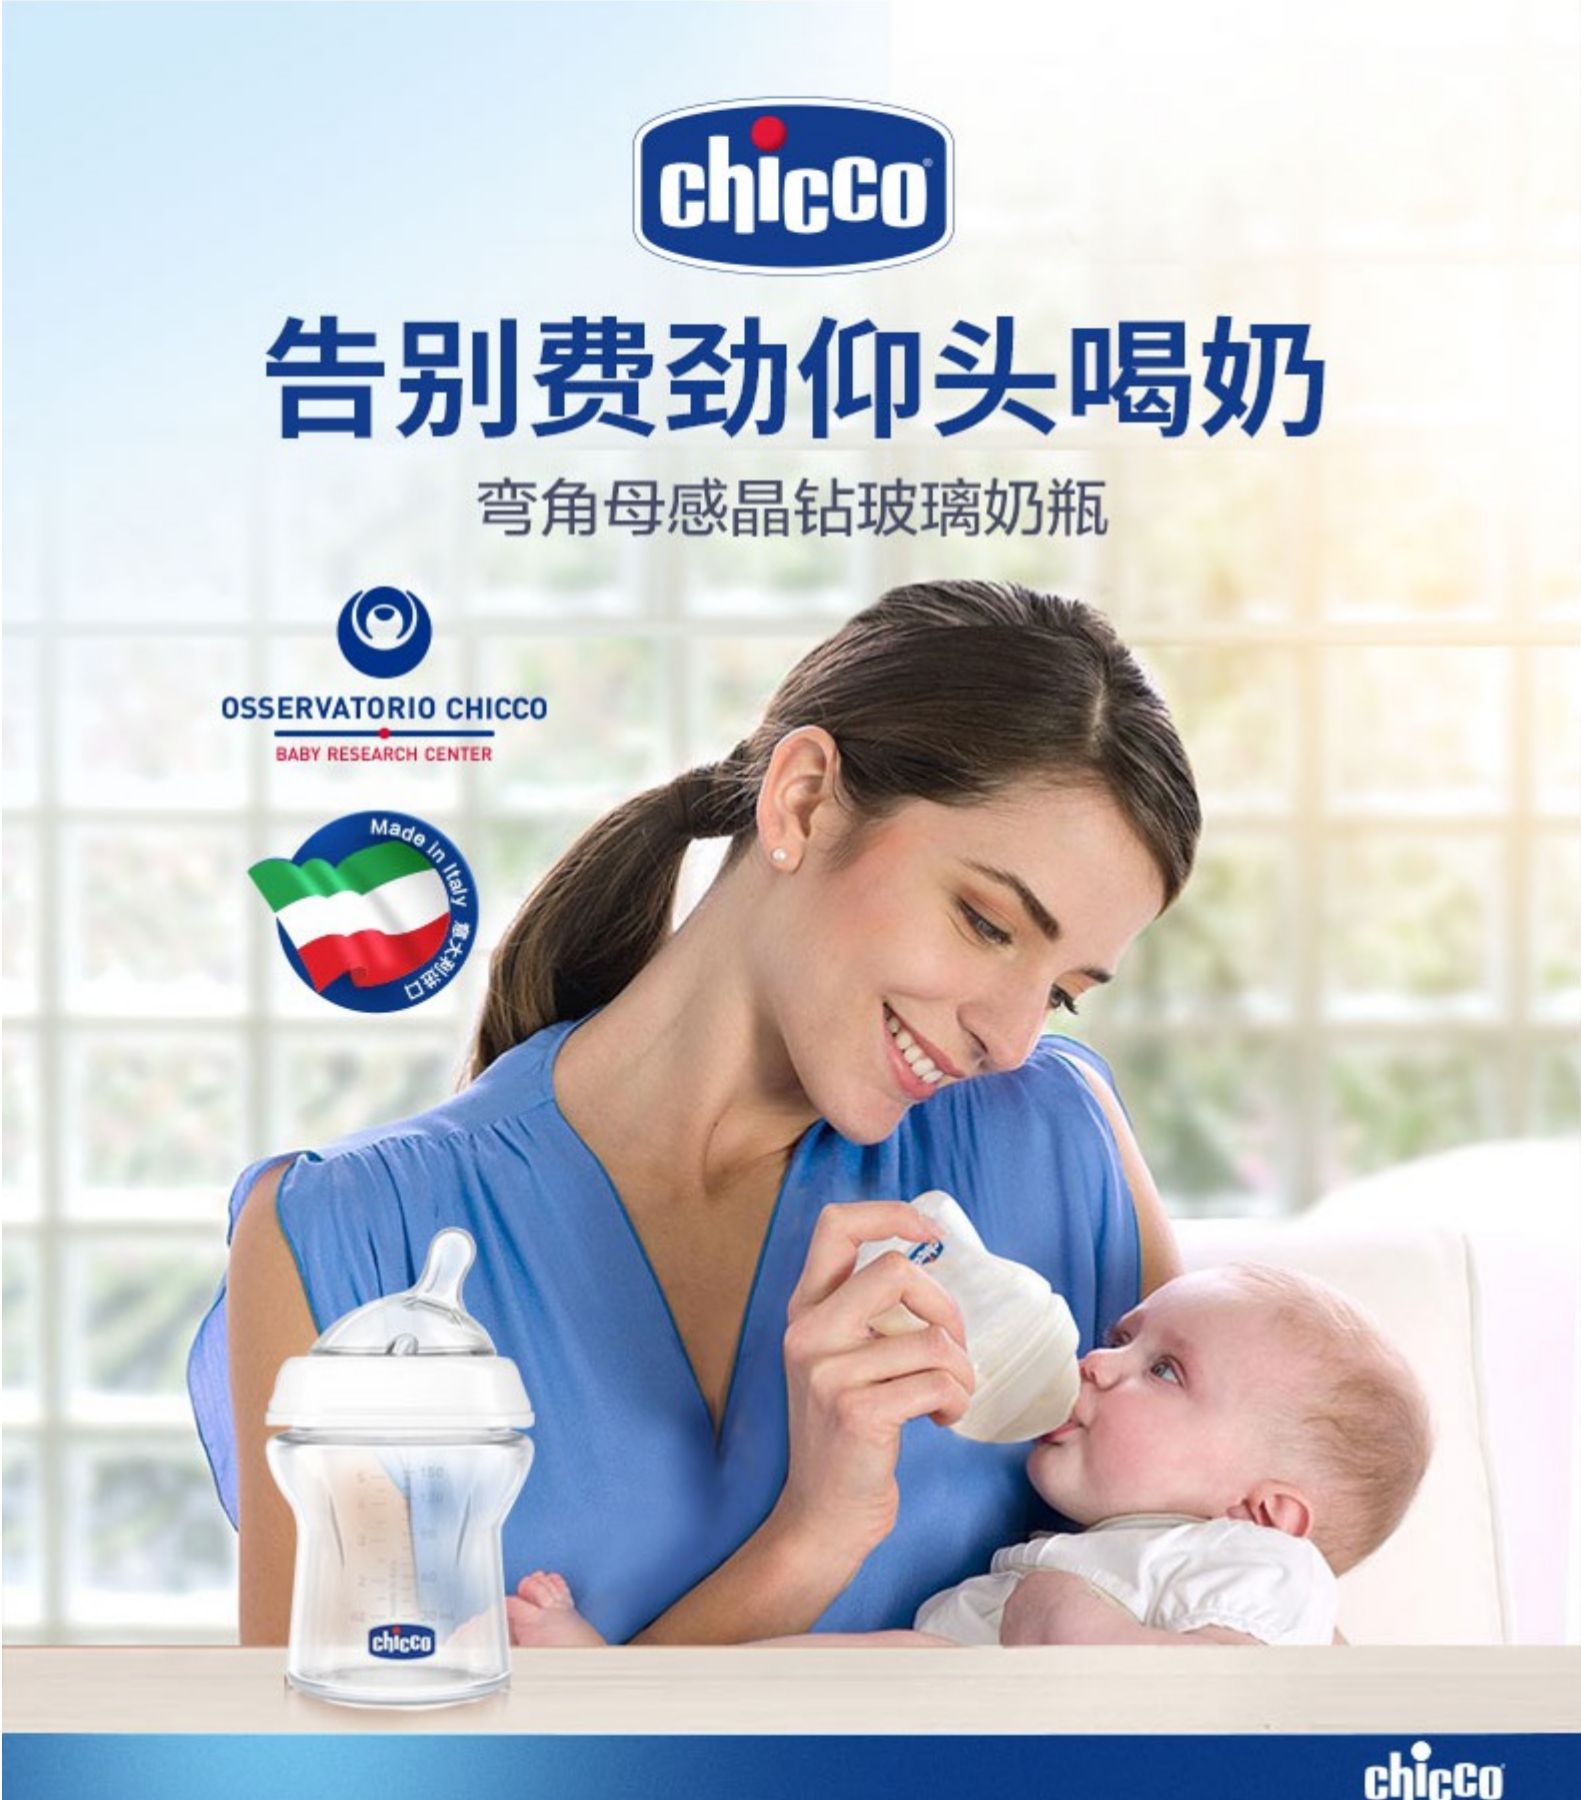 chicco智高意大利高端母婴新生婴儿自然母感玻璃奶瓶 0M+  150ML详情图3